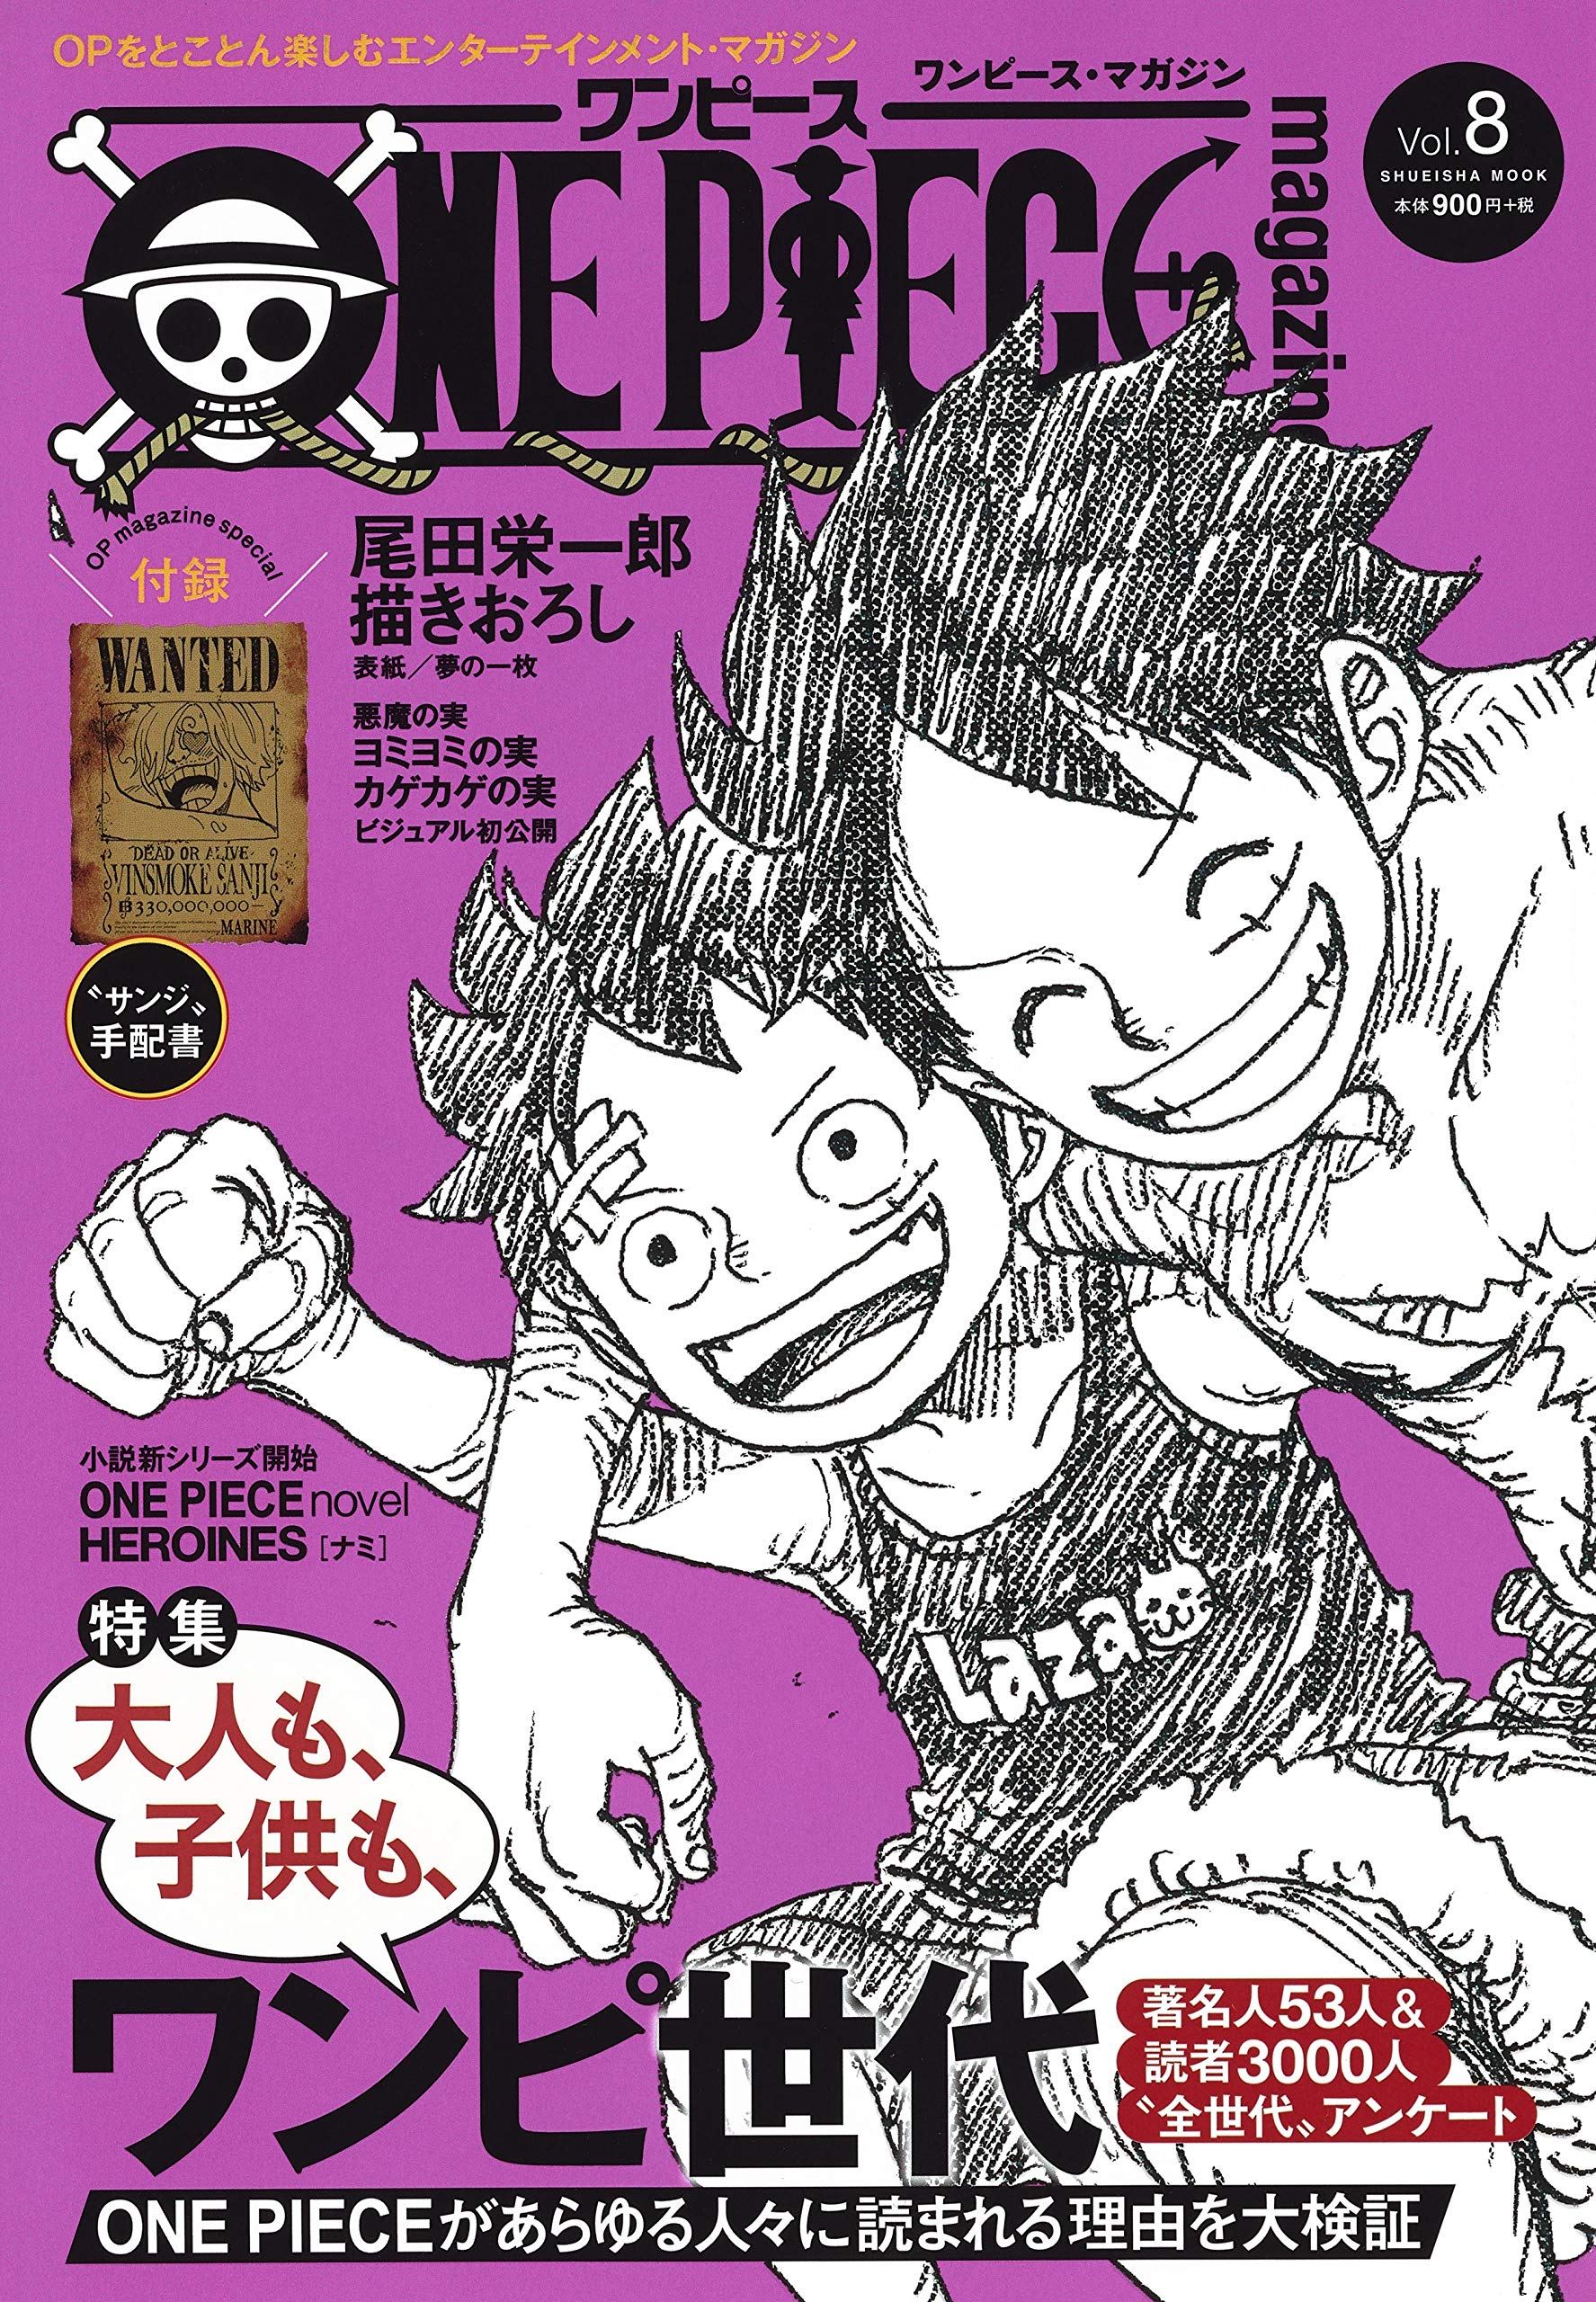 One Piece Magazine: 1